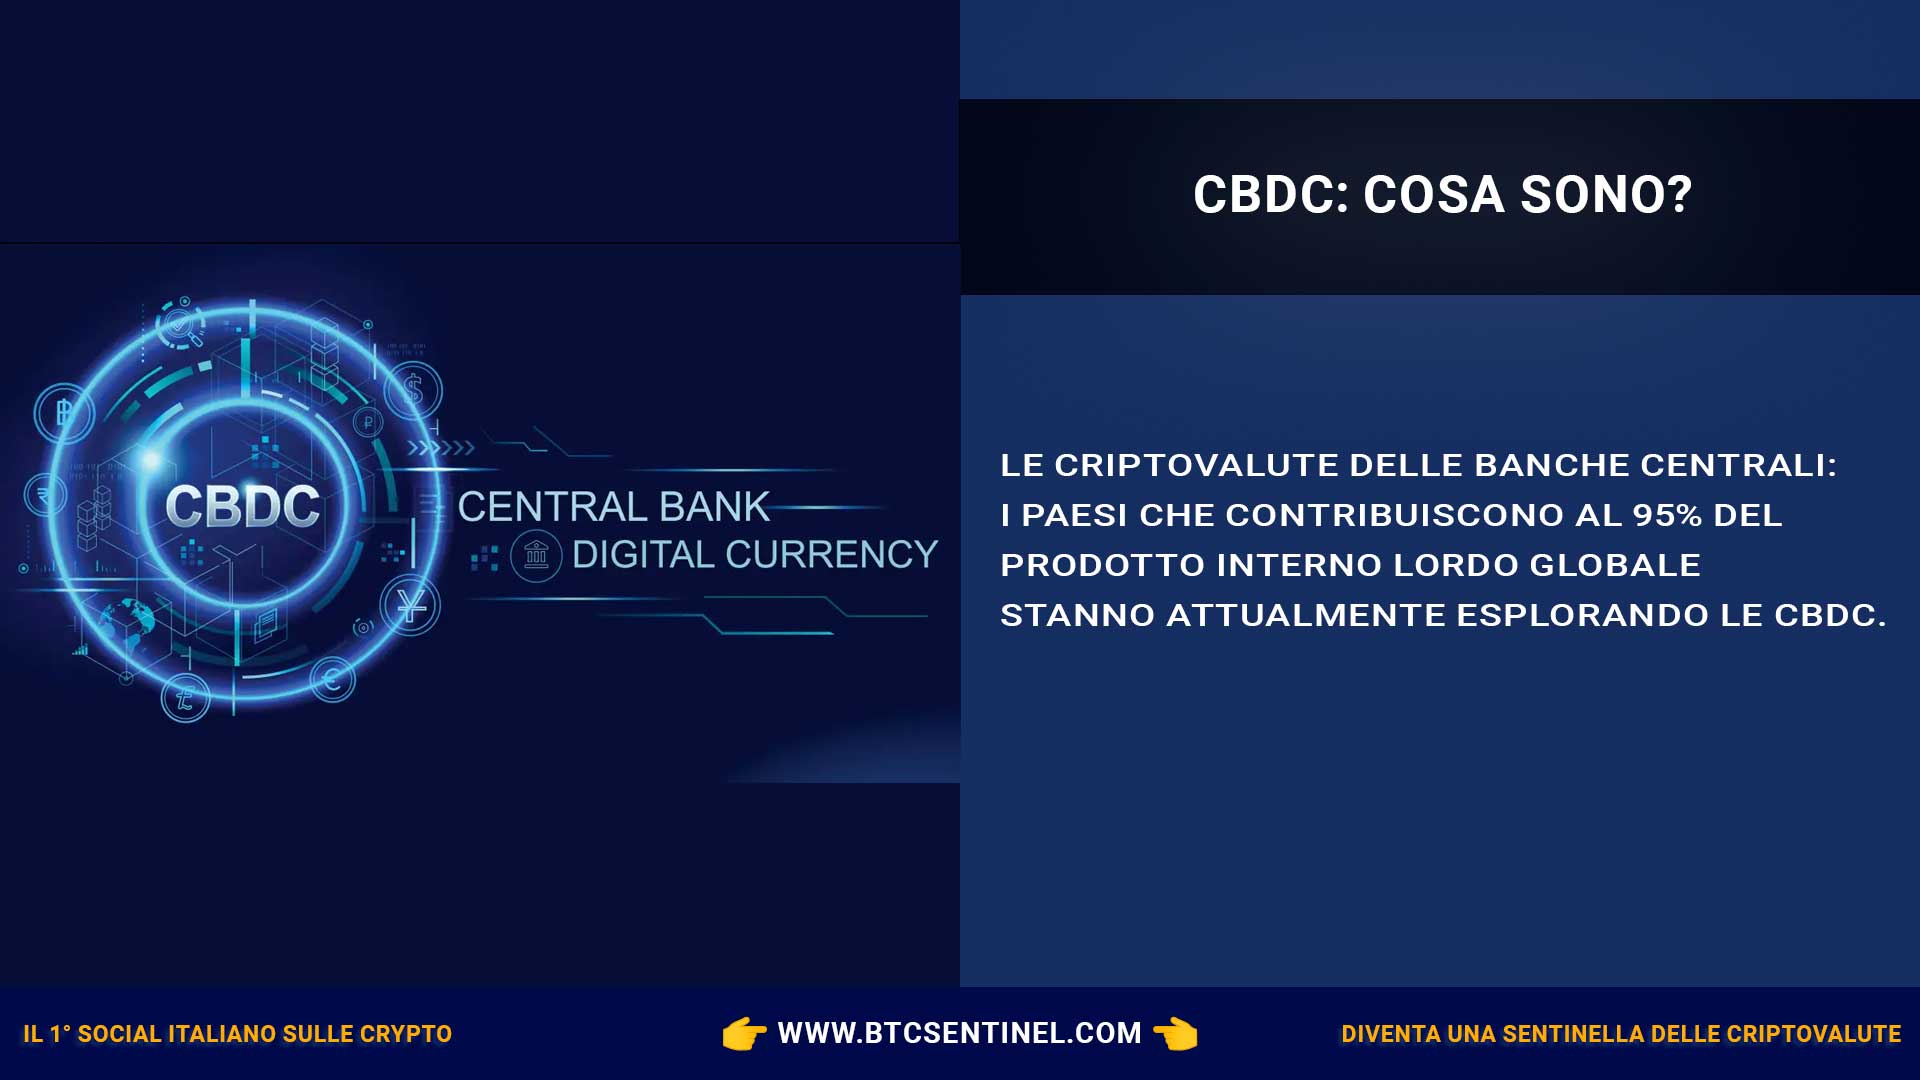 Criptovalute delle banche centrali (CBDC): cosa sono